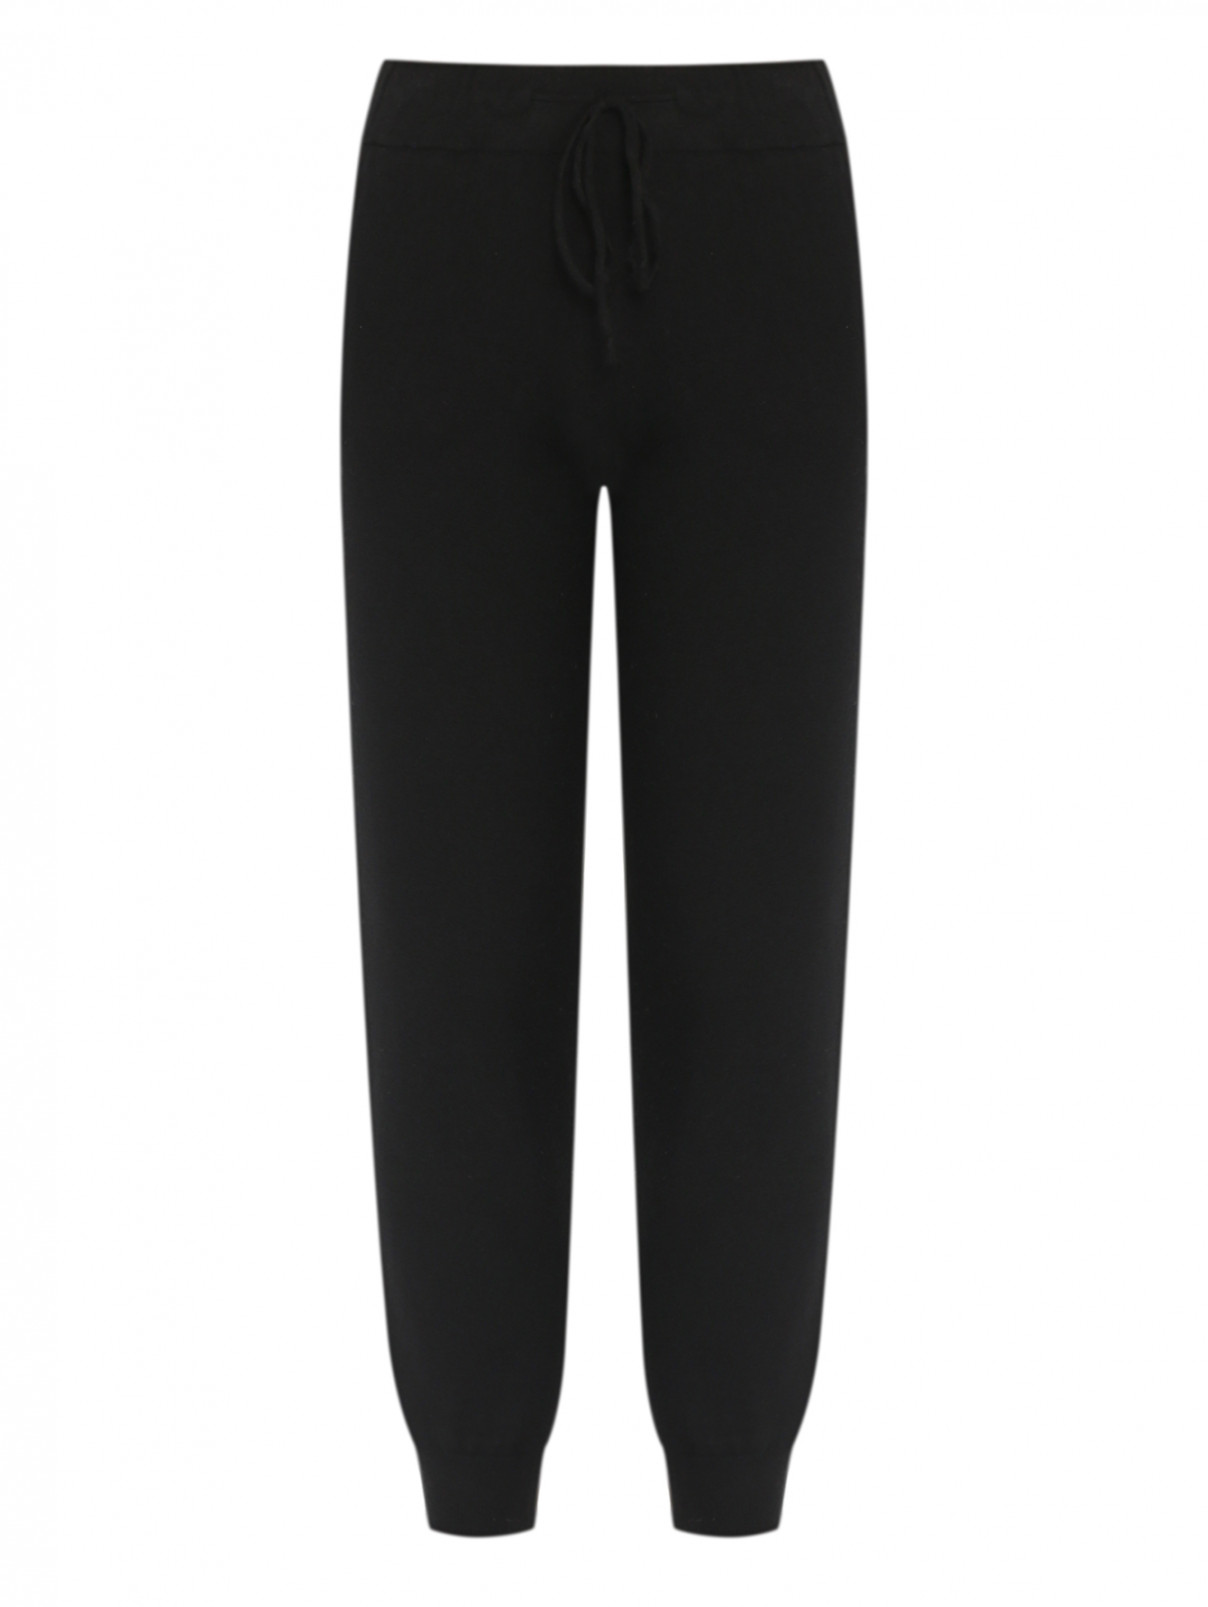 Трикотажные брюки на резинке Shade  –  Общий вид  – Цвет:  Черный